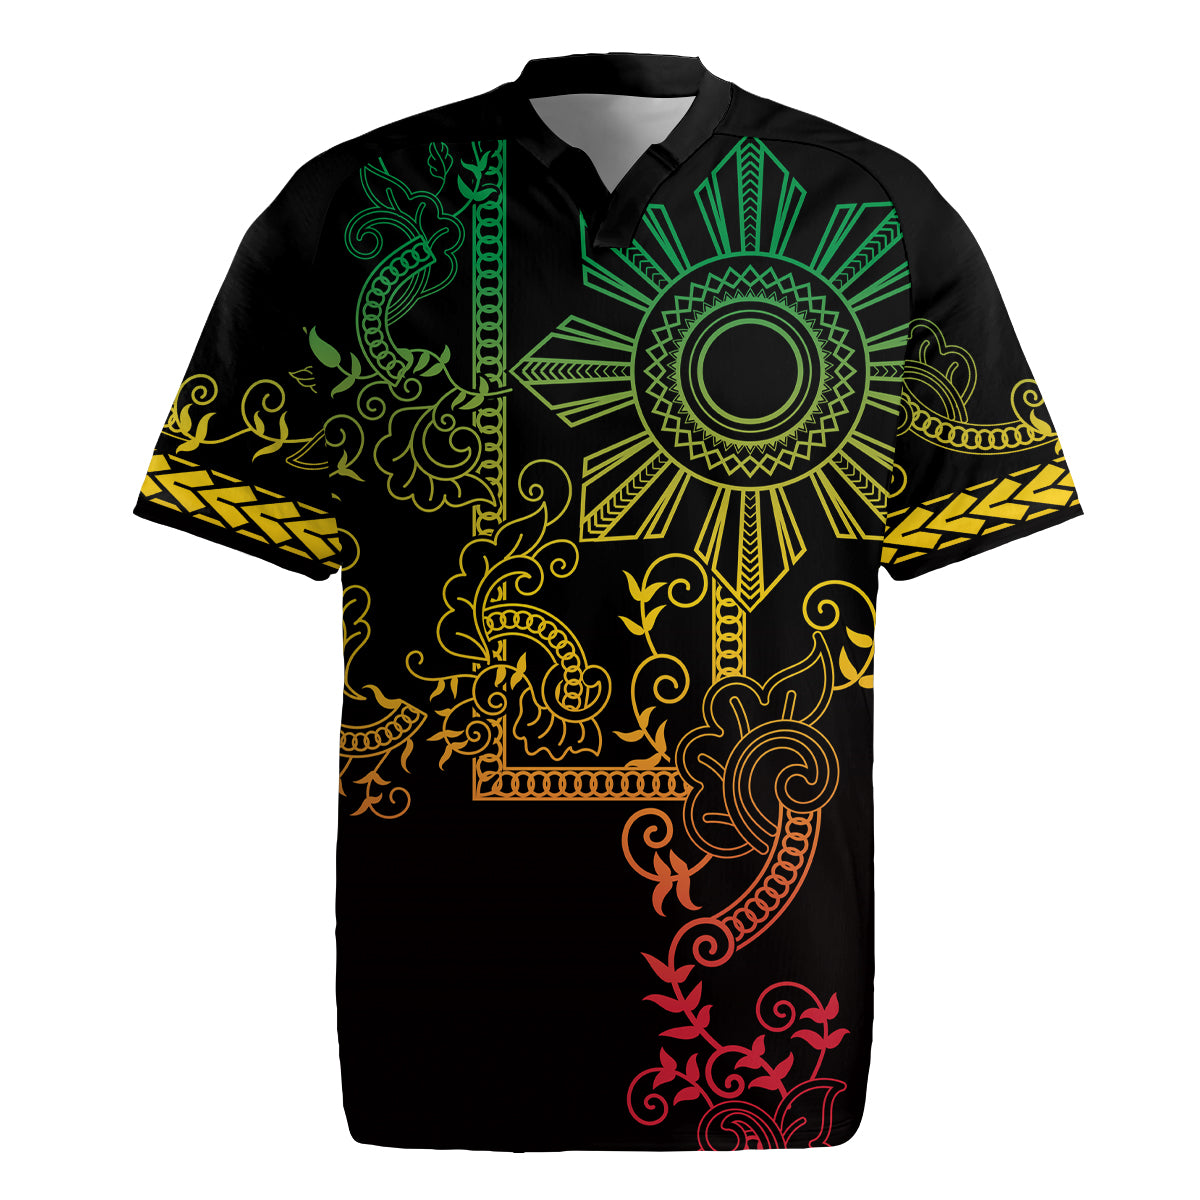 Filipino Sun Tribal Tattoo Rugby Jersey Philippines Inspired Barong Reggae Art